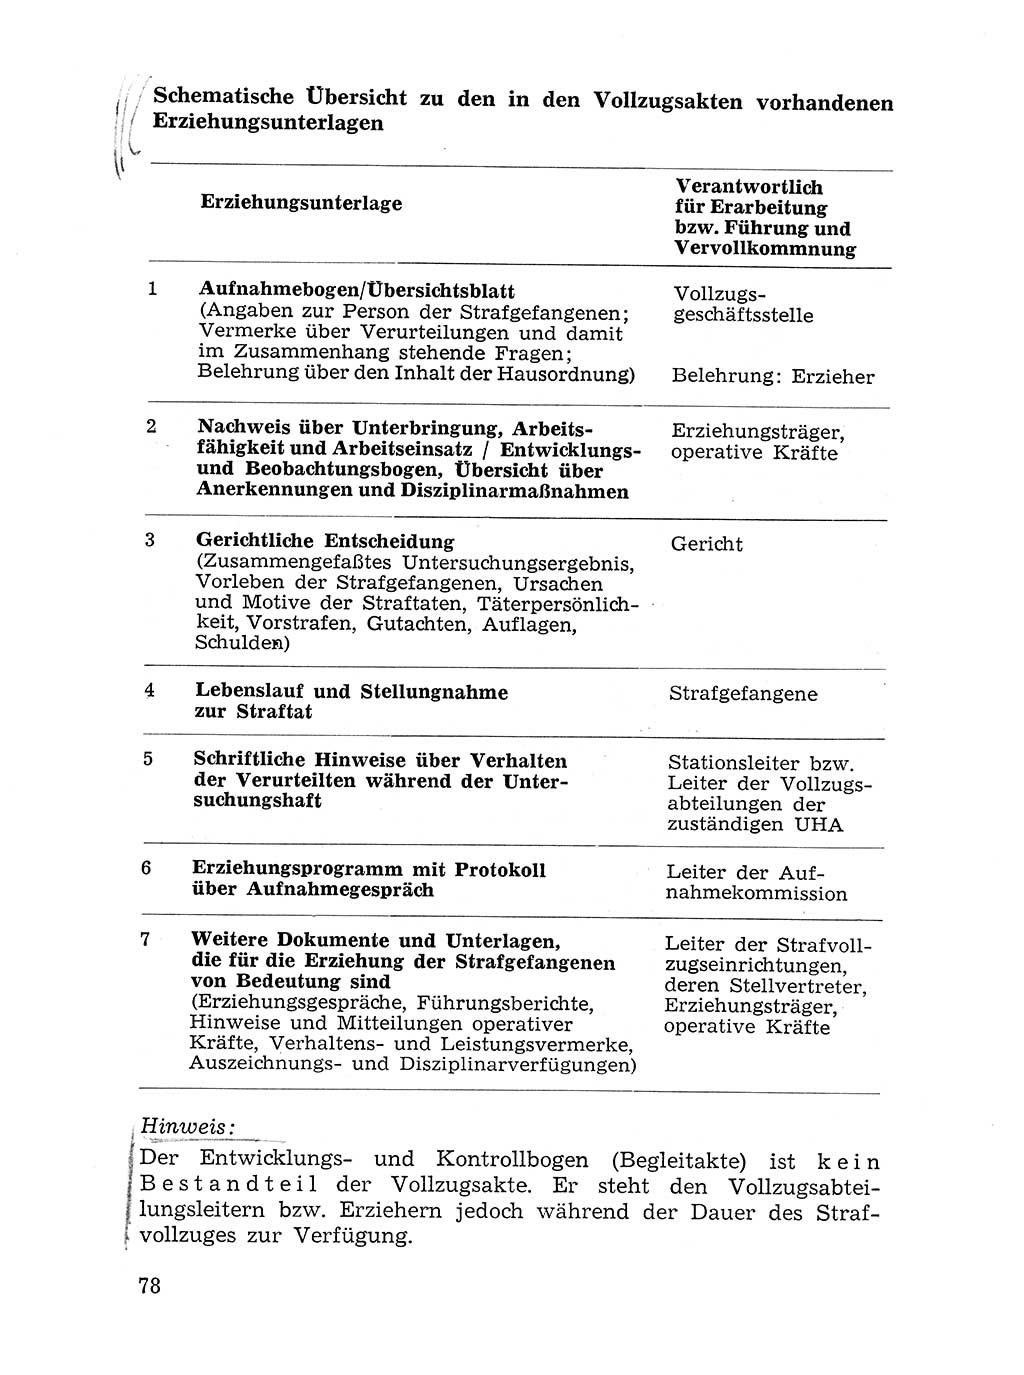 Sozialistischer Strafvollzug (SV) [Deutsche Demokratische Republik (DDR)] 1972, Seite 78 (Soz. SV DDR 1972, S. 78)